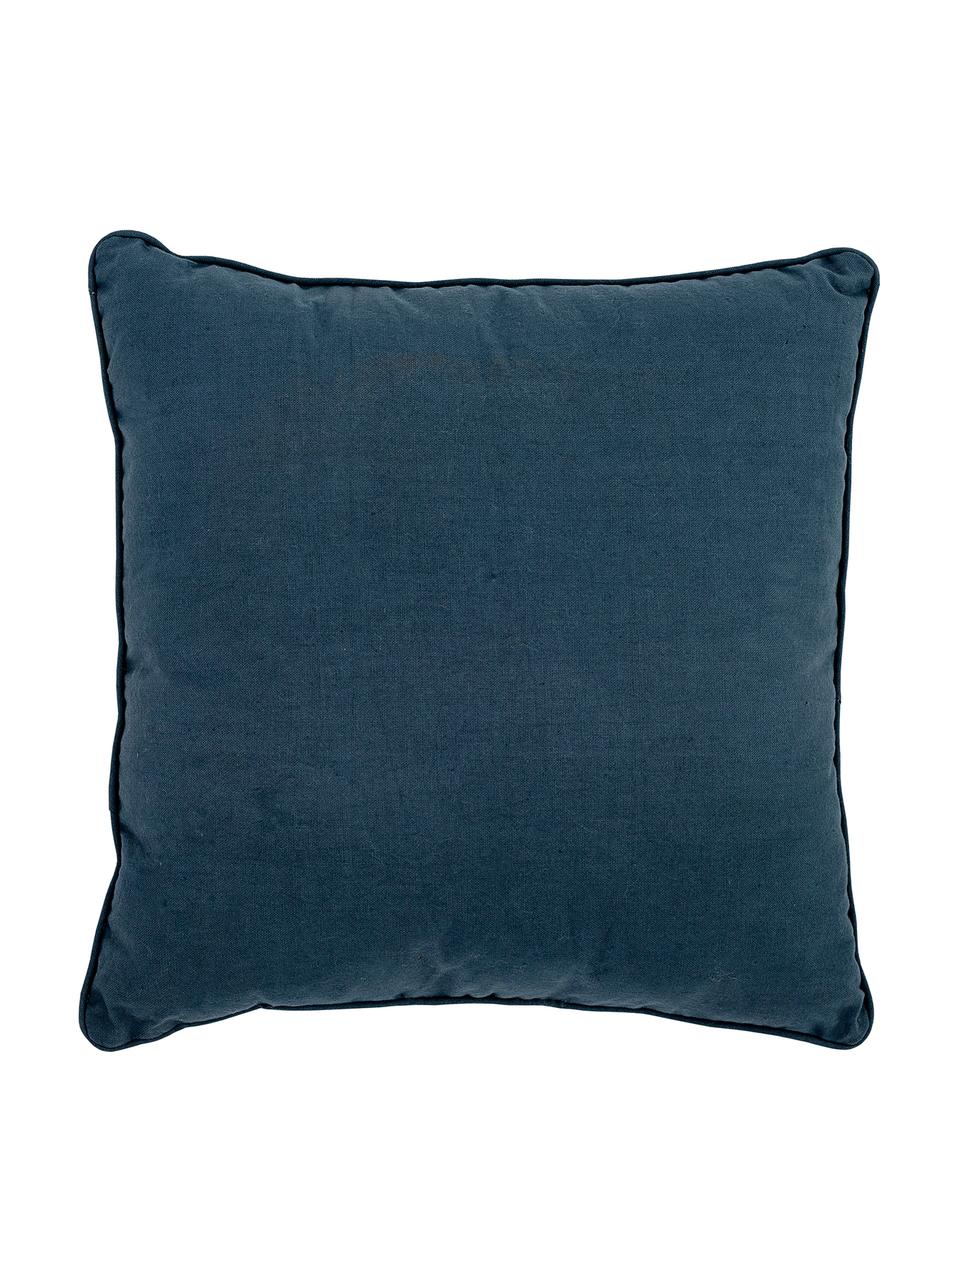 Kissen Hero, mit Inlett, Bezug: 70% Baumwolle, 30% Polyes, Blau, 36 x 36 cm